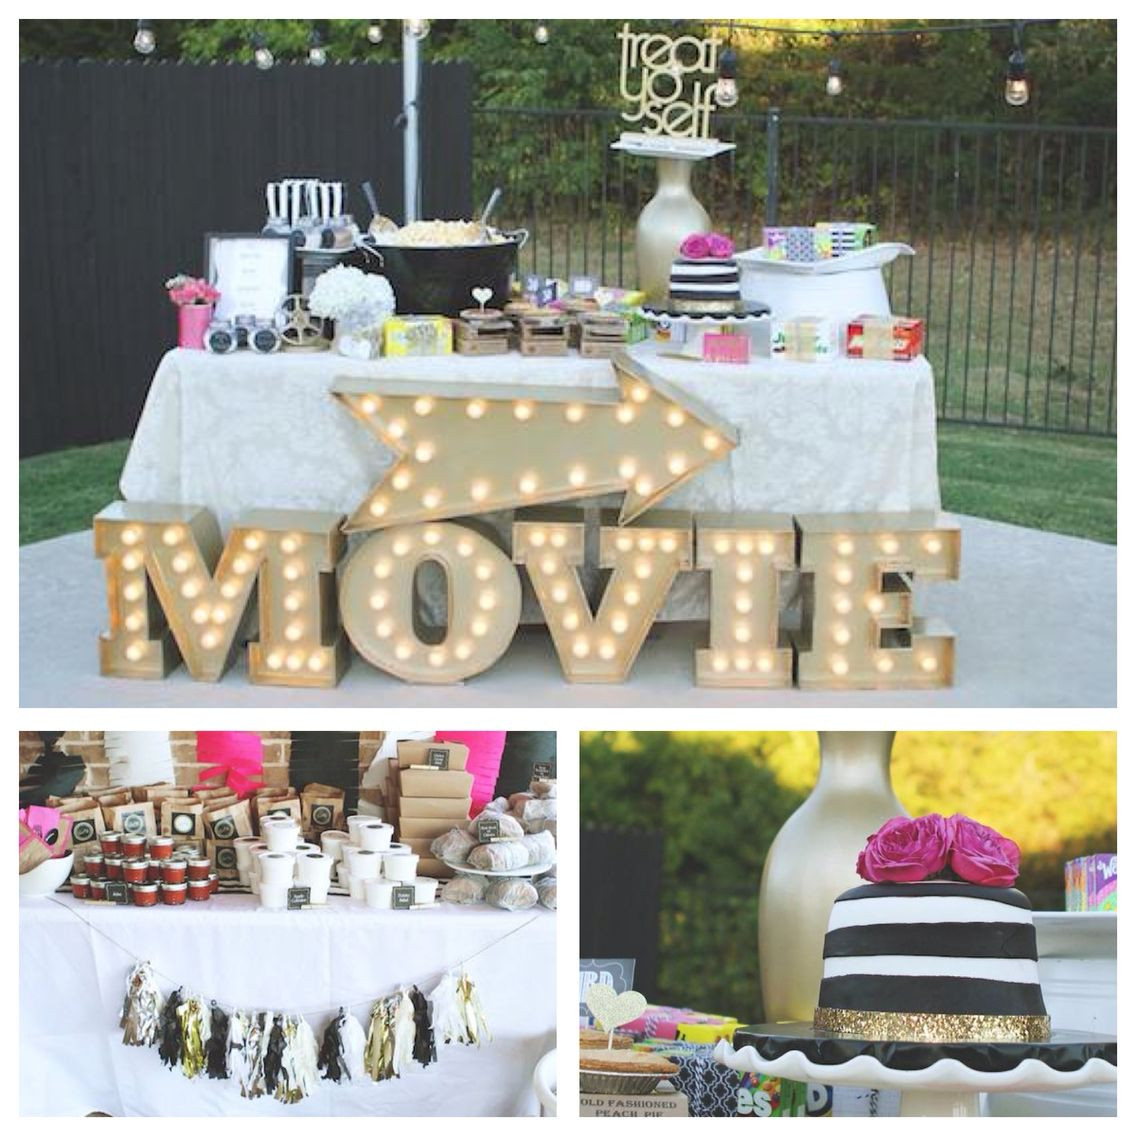 Backyard Movie Party Ideas
 Outdoor Movie Night Thirtieth Birthday Party